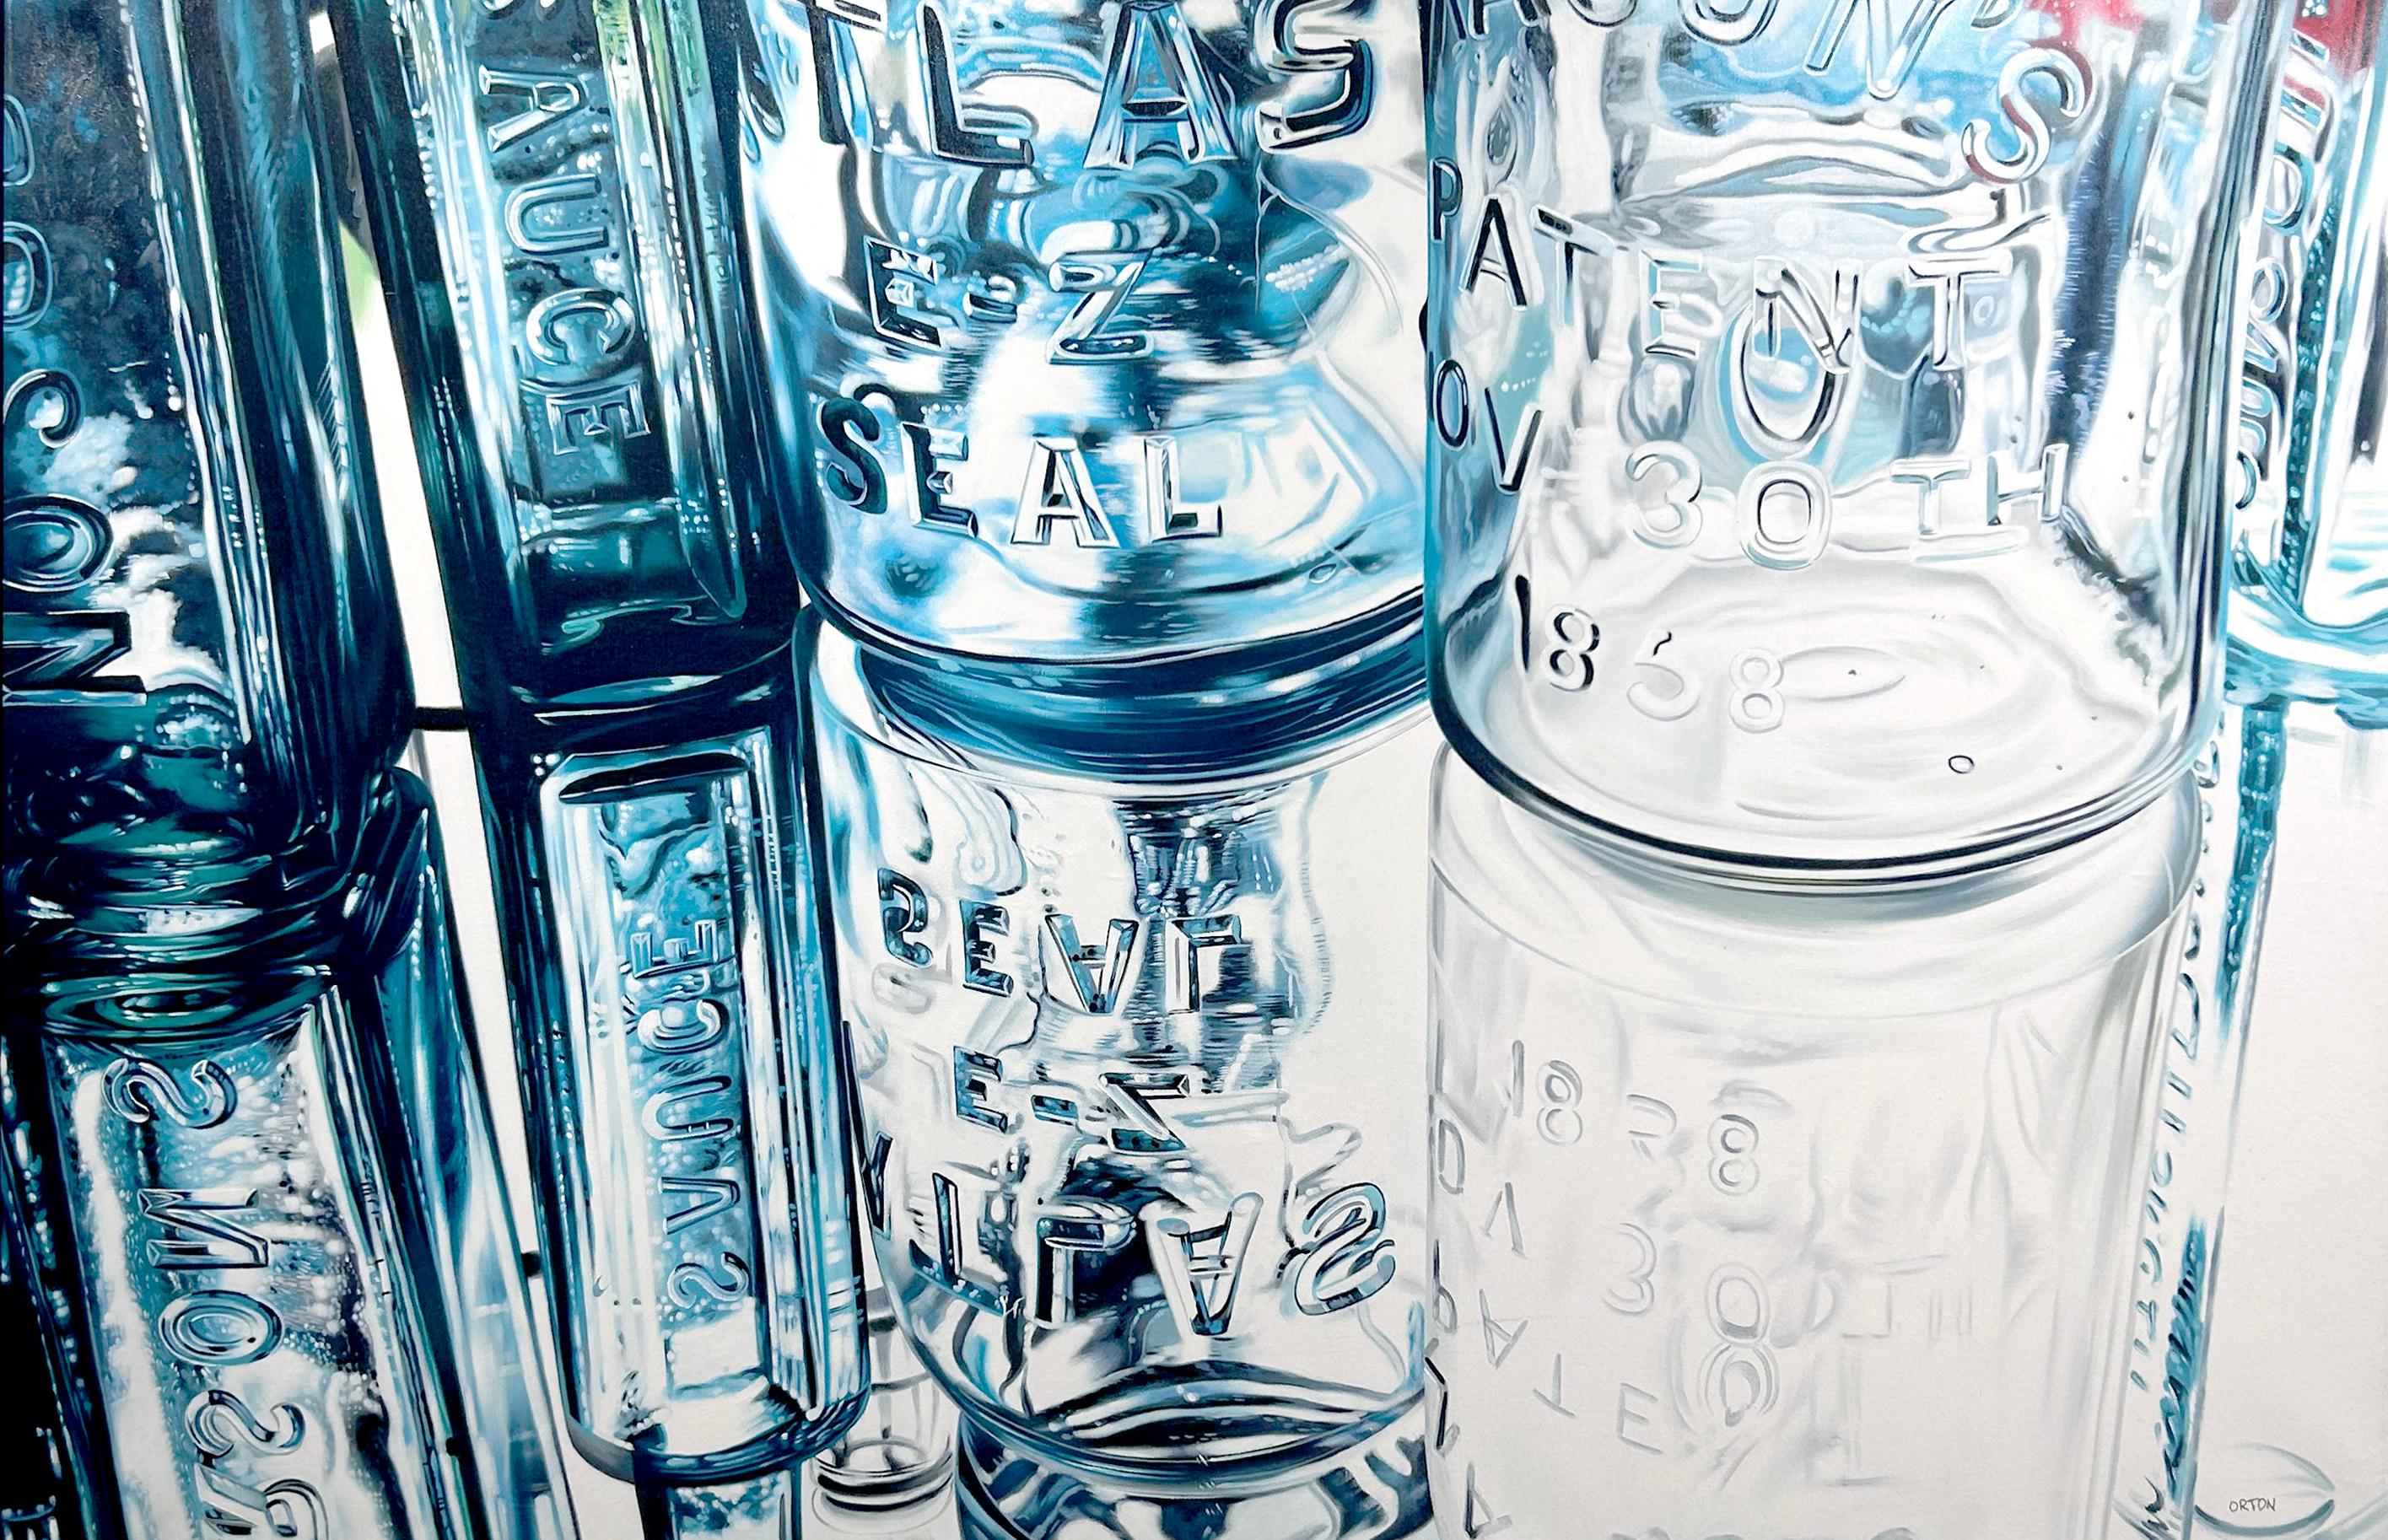 Ken Orton's "Rose Blossom" ist ein 36x54 Original-Ölgemälde auf Leinwand. Dieses Gemälde zeigt ein Stillleben mit einer Auswahl von Glasflaschen und Gläsern in Nahaufnahme. Sanfte und subtile Blautöne biegen, reflektieren und brechen sich im Glas